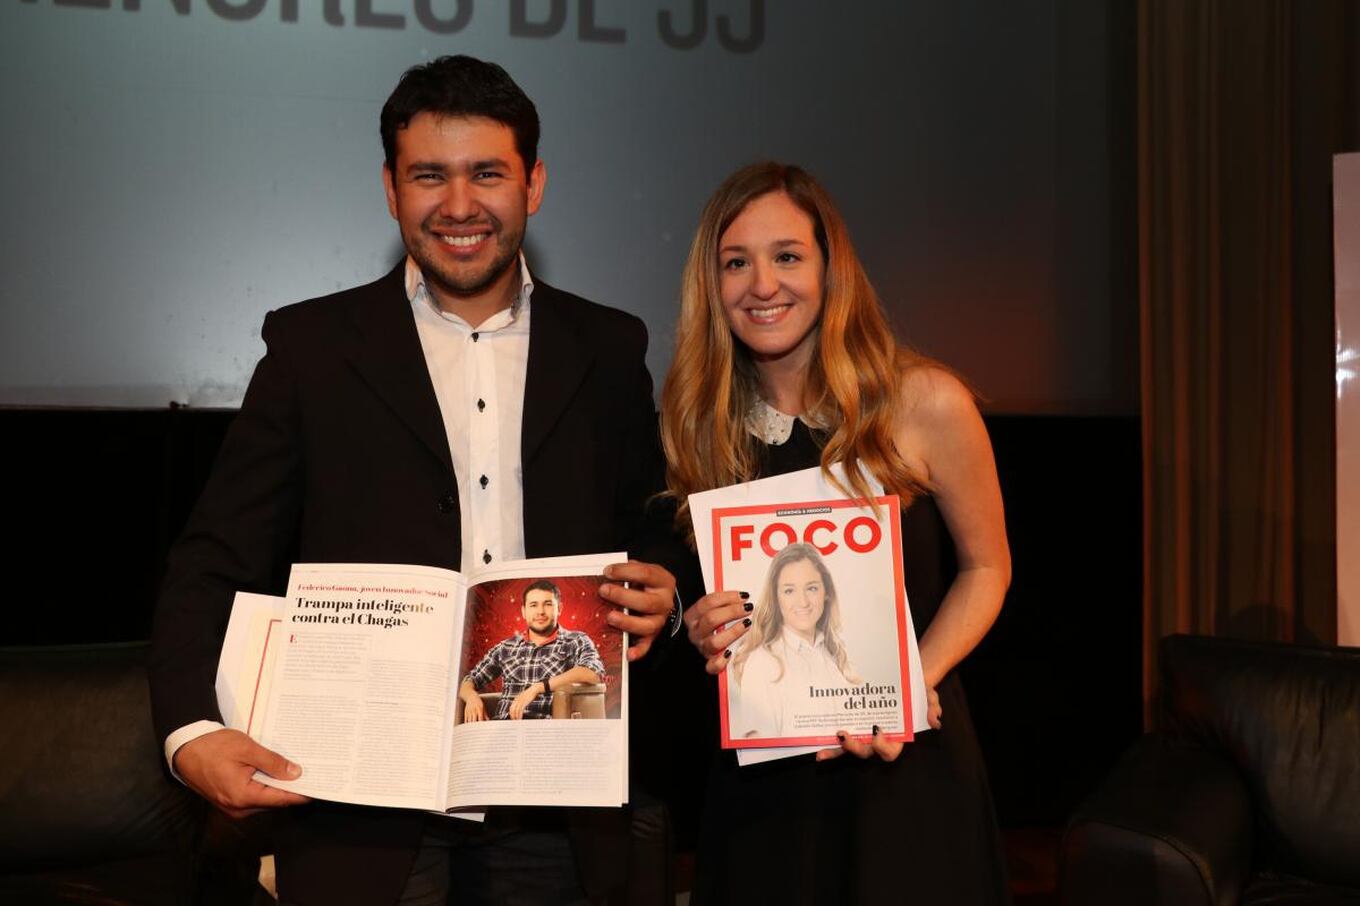 Tras finalizar la ceremonia de premiación, los galardonados recibieron la edición impresa de la revista Foco.